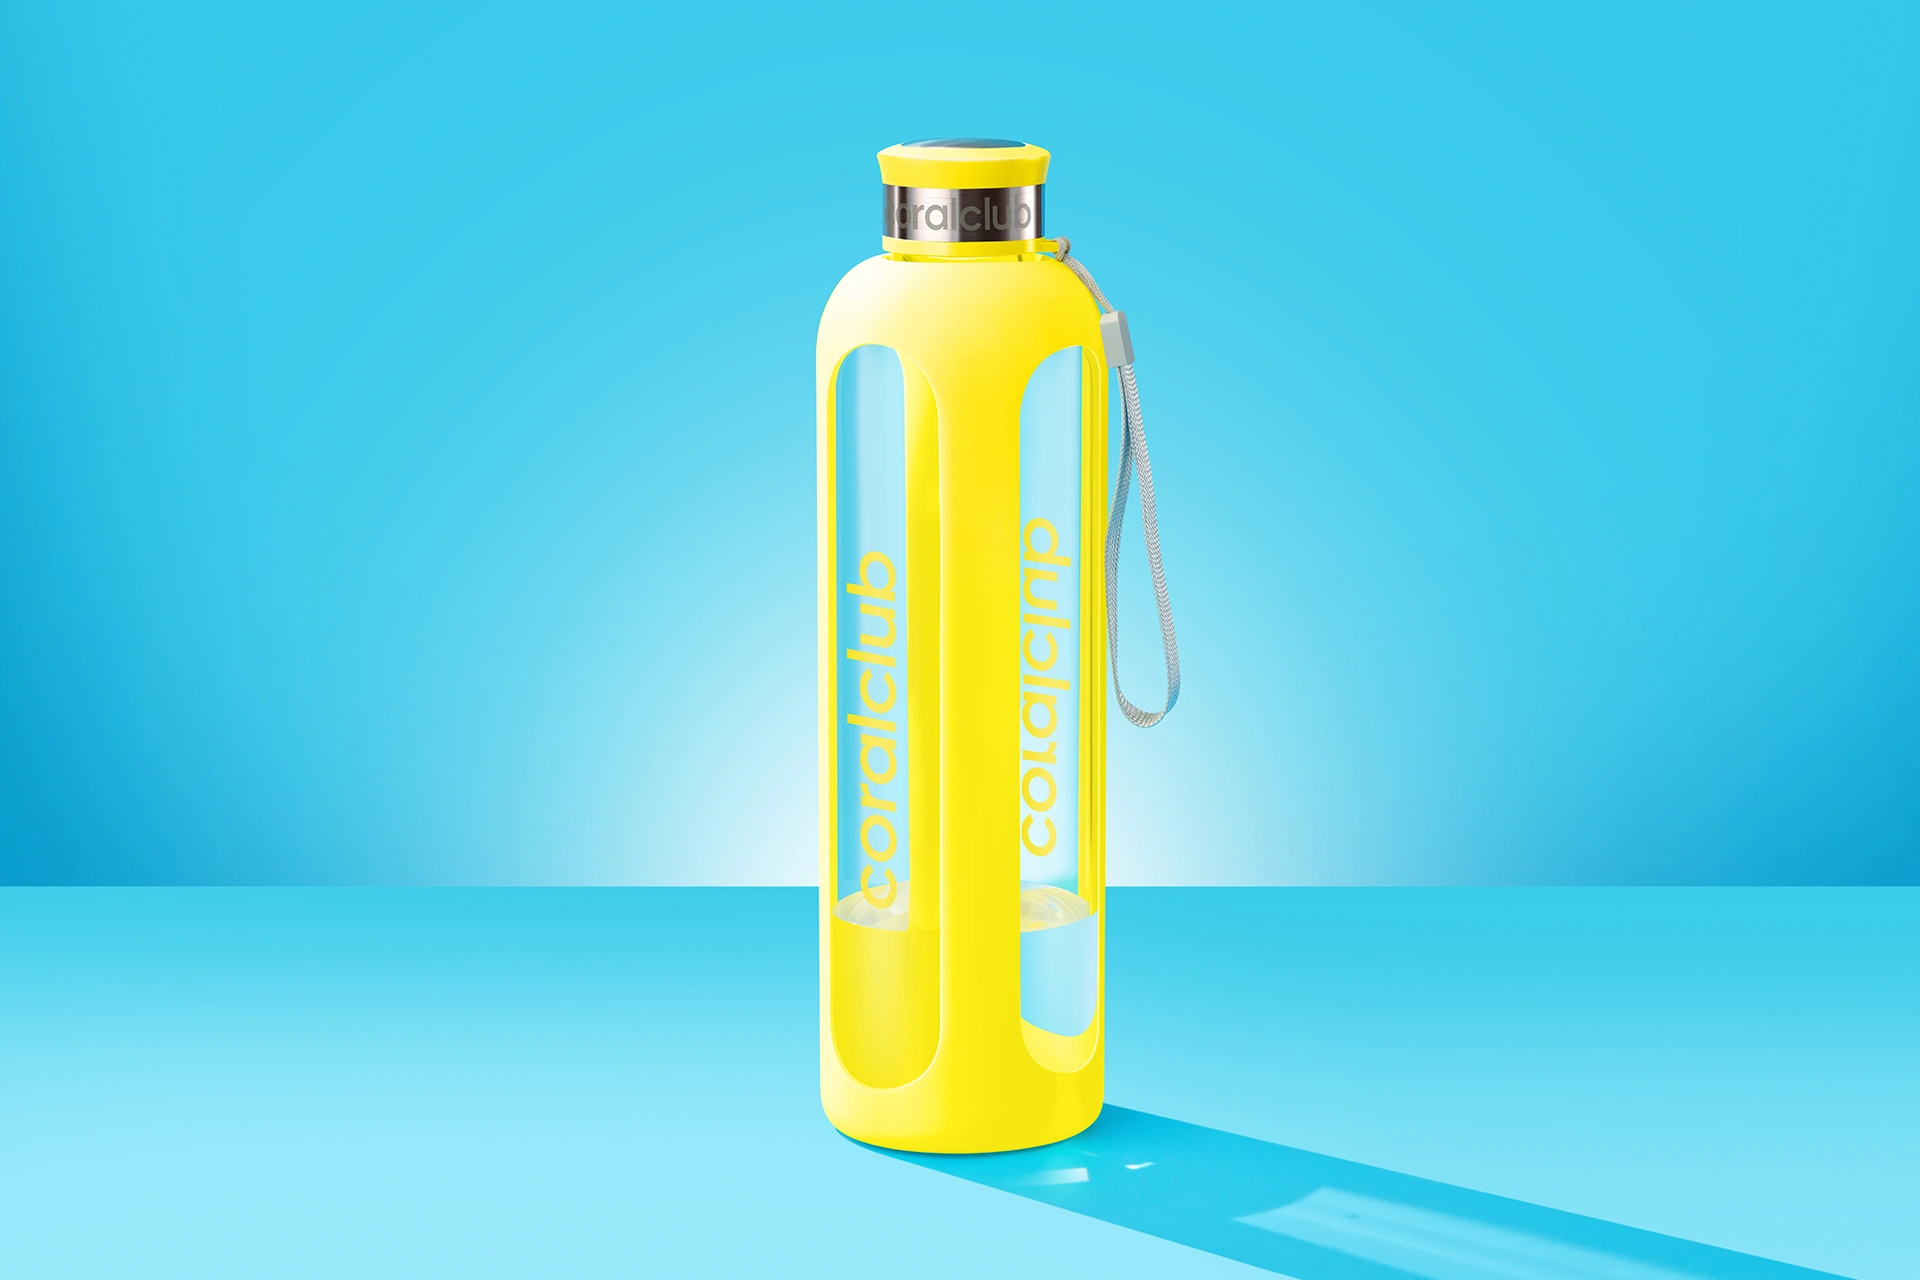 Стеклянная бутылка "Clear Water" (900 мл.): https://ru.coral.club/shop/glass-bottle-clearwater.html?offer=99743
Бутылка Clear Water – Ваш удобный, полезный и стильный аксессуар на каждый день.


Бутылка Clear Water изготовлена из высококачественного боросиликатного стекла повышенной прочности. Она устойчива к механическим повреждениям, а значит, будет надежным спутником в поездках и путешествиях.

Утолщенный силиконовый чехол надежно защищает бутылку, поэтому ее комфортно держать в руке, а удобная эргономичная крышка обеспечивает 100% герметичность.